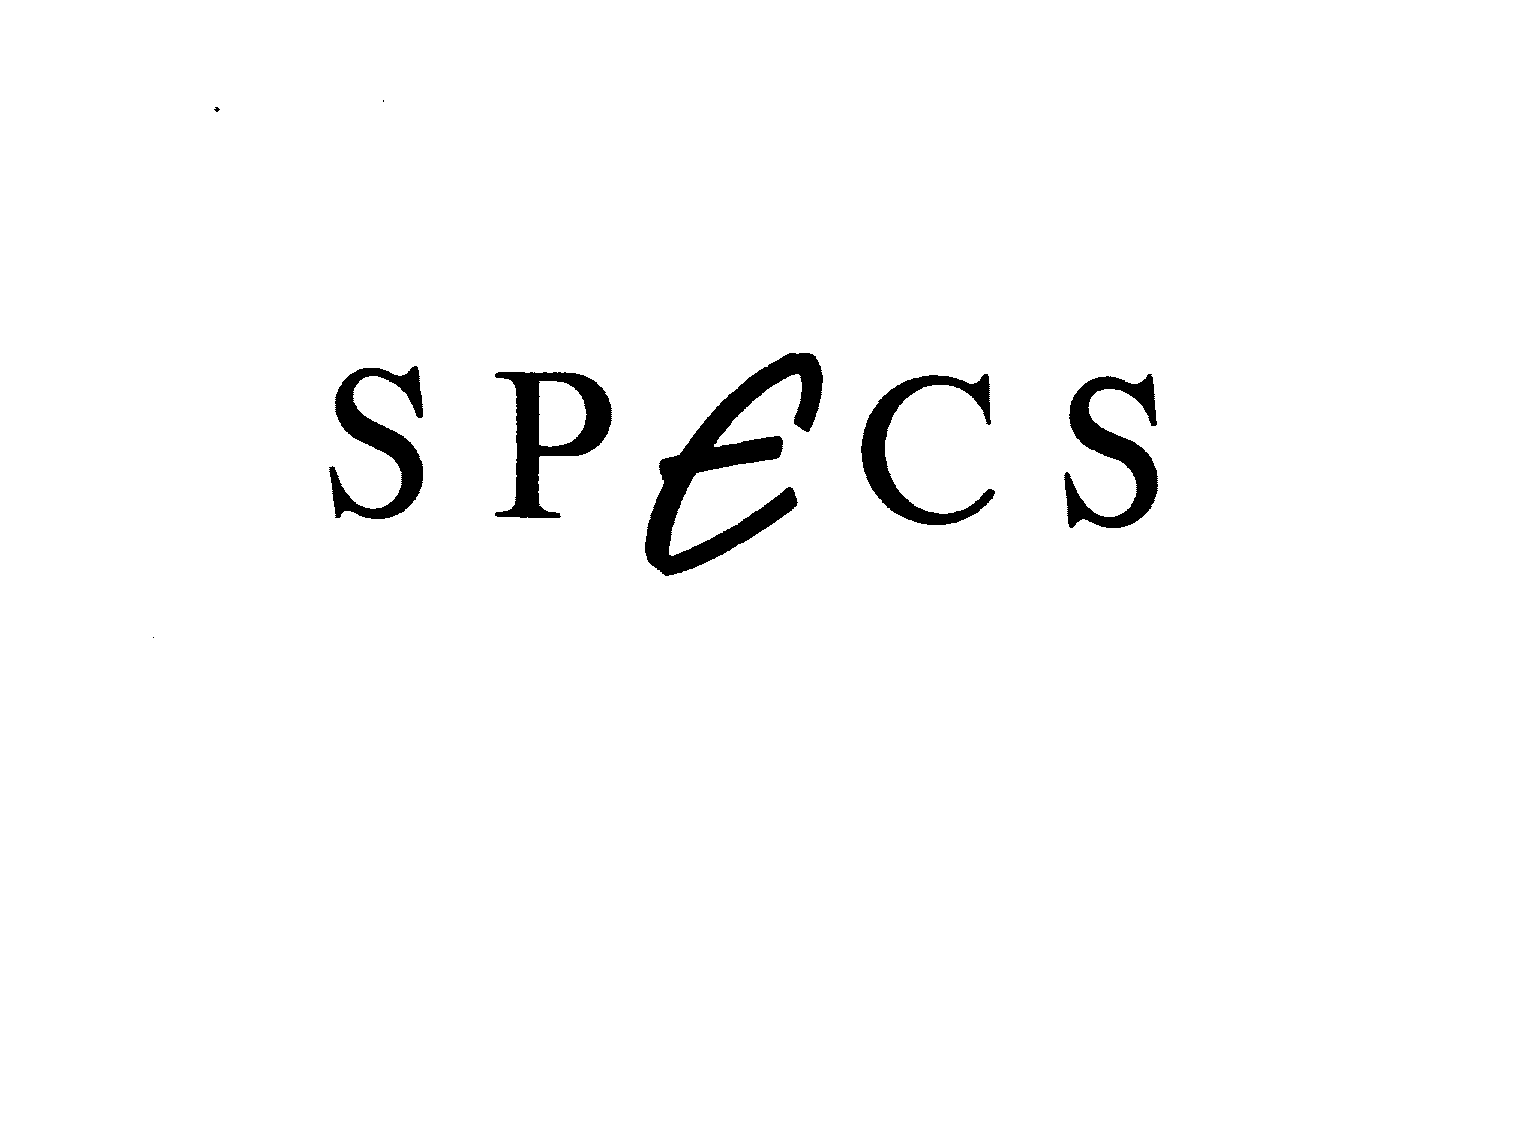 SPECS